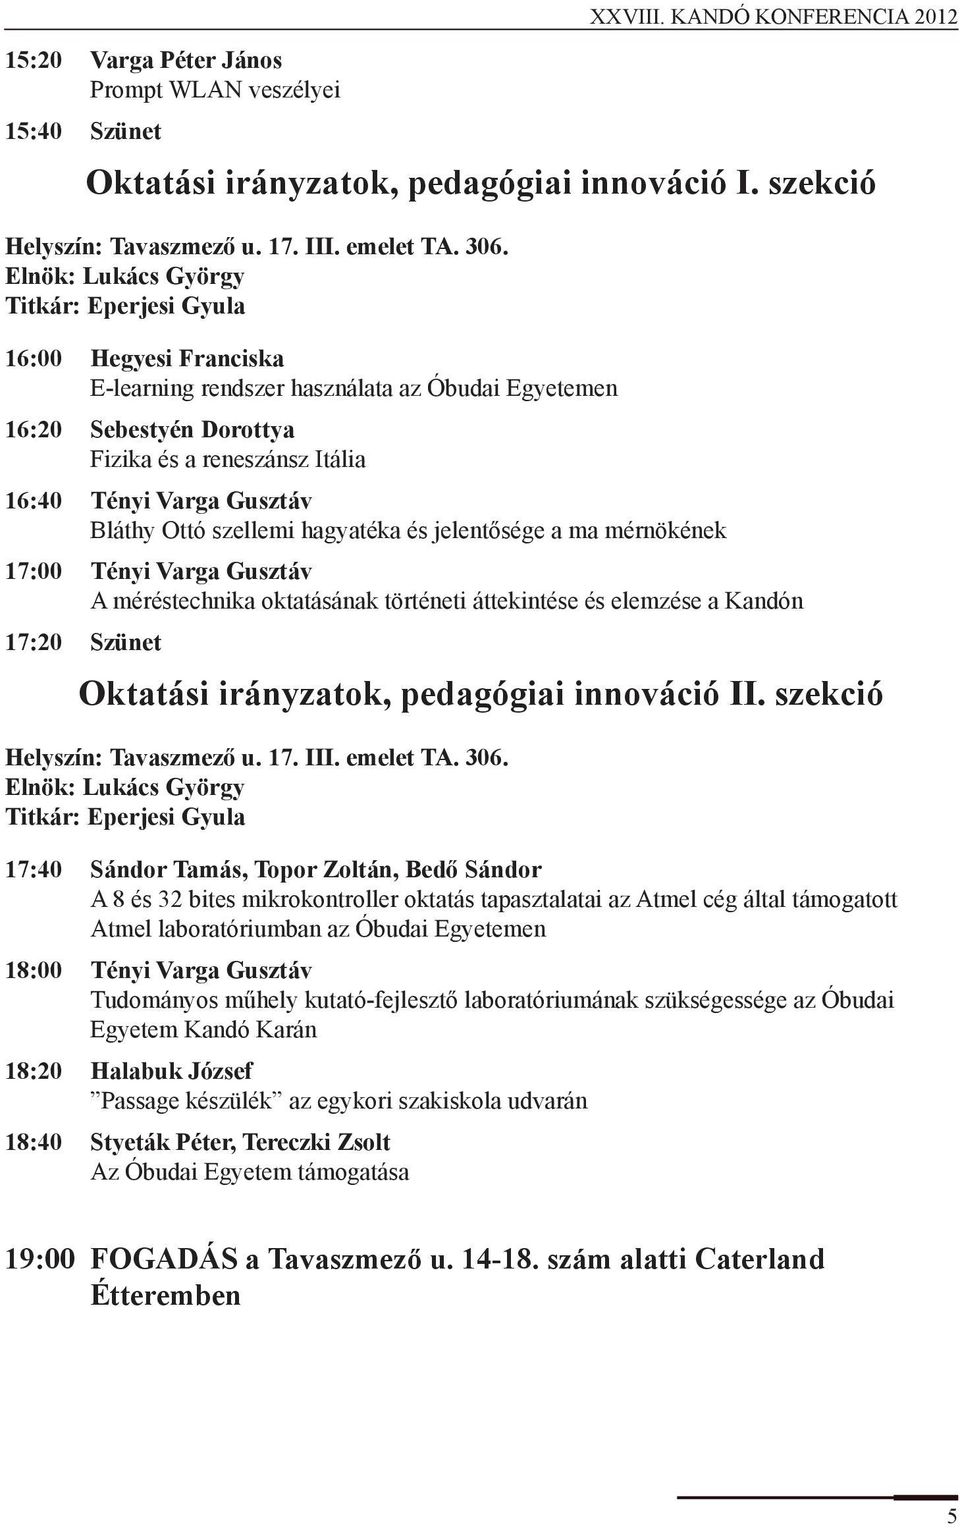 XXVIII. KANDÓ KONFERENCIA Plenáris szekció - PDF Free Download